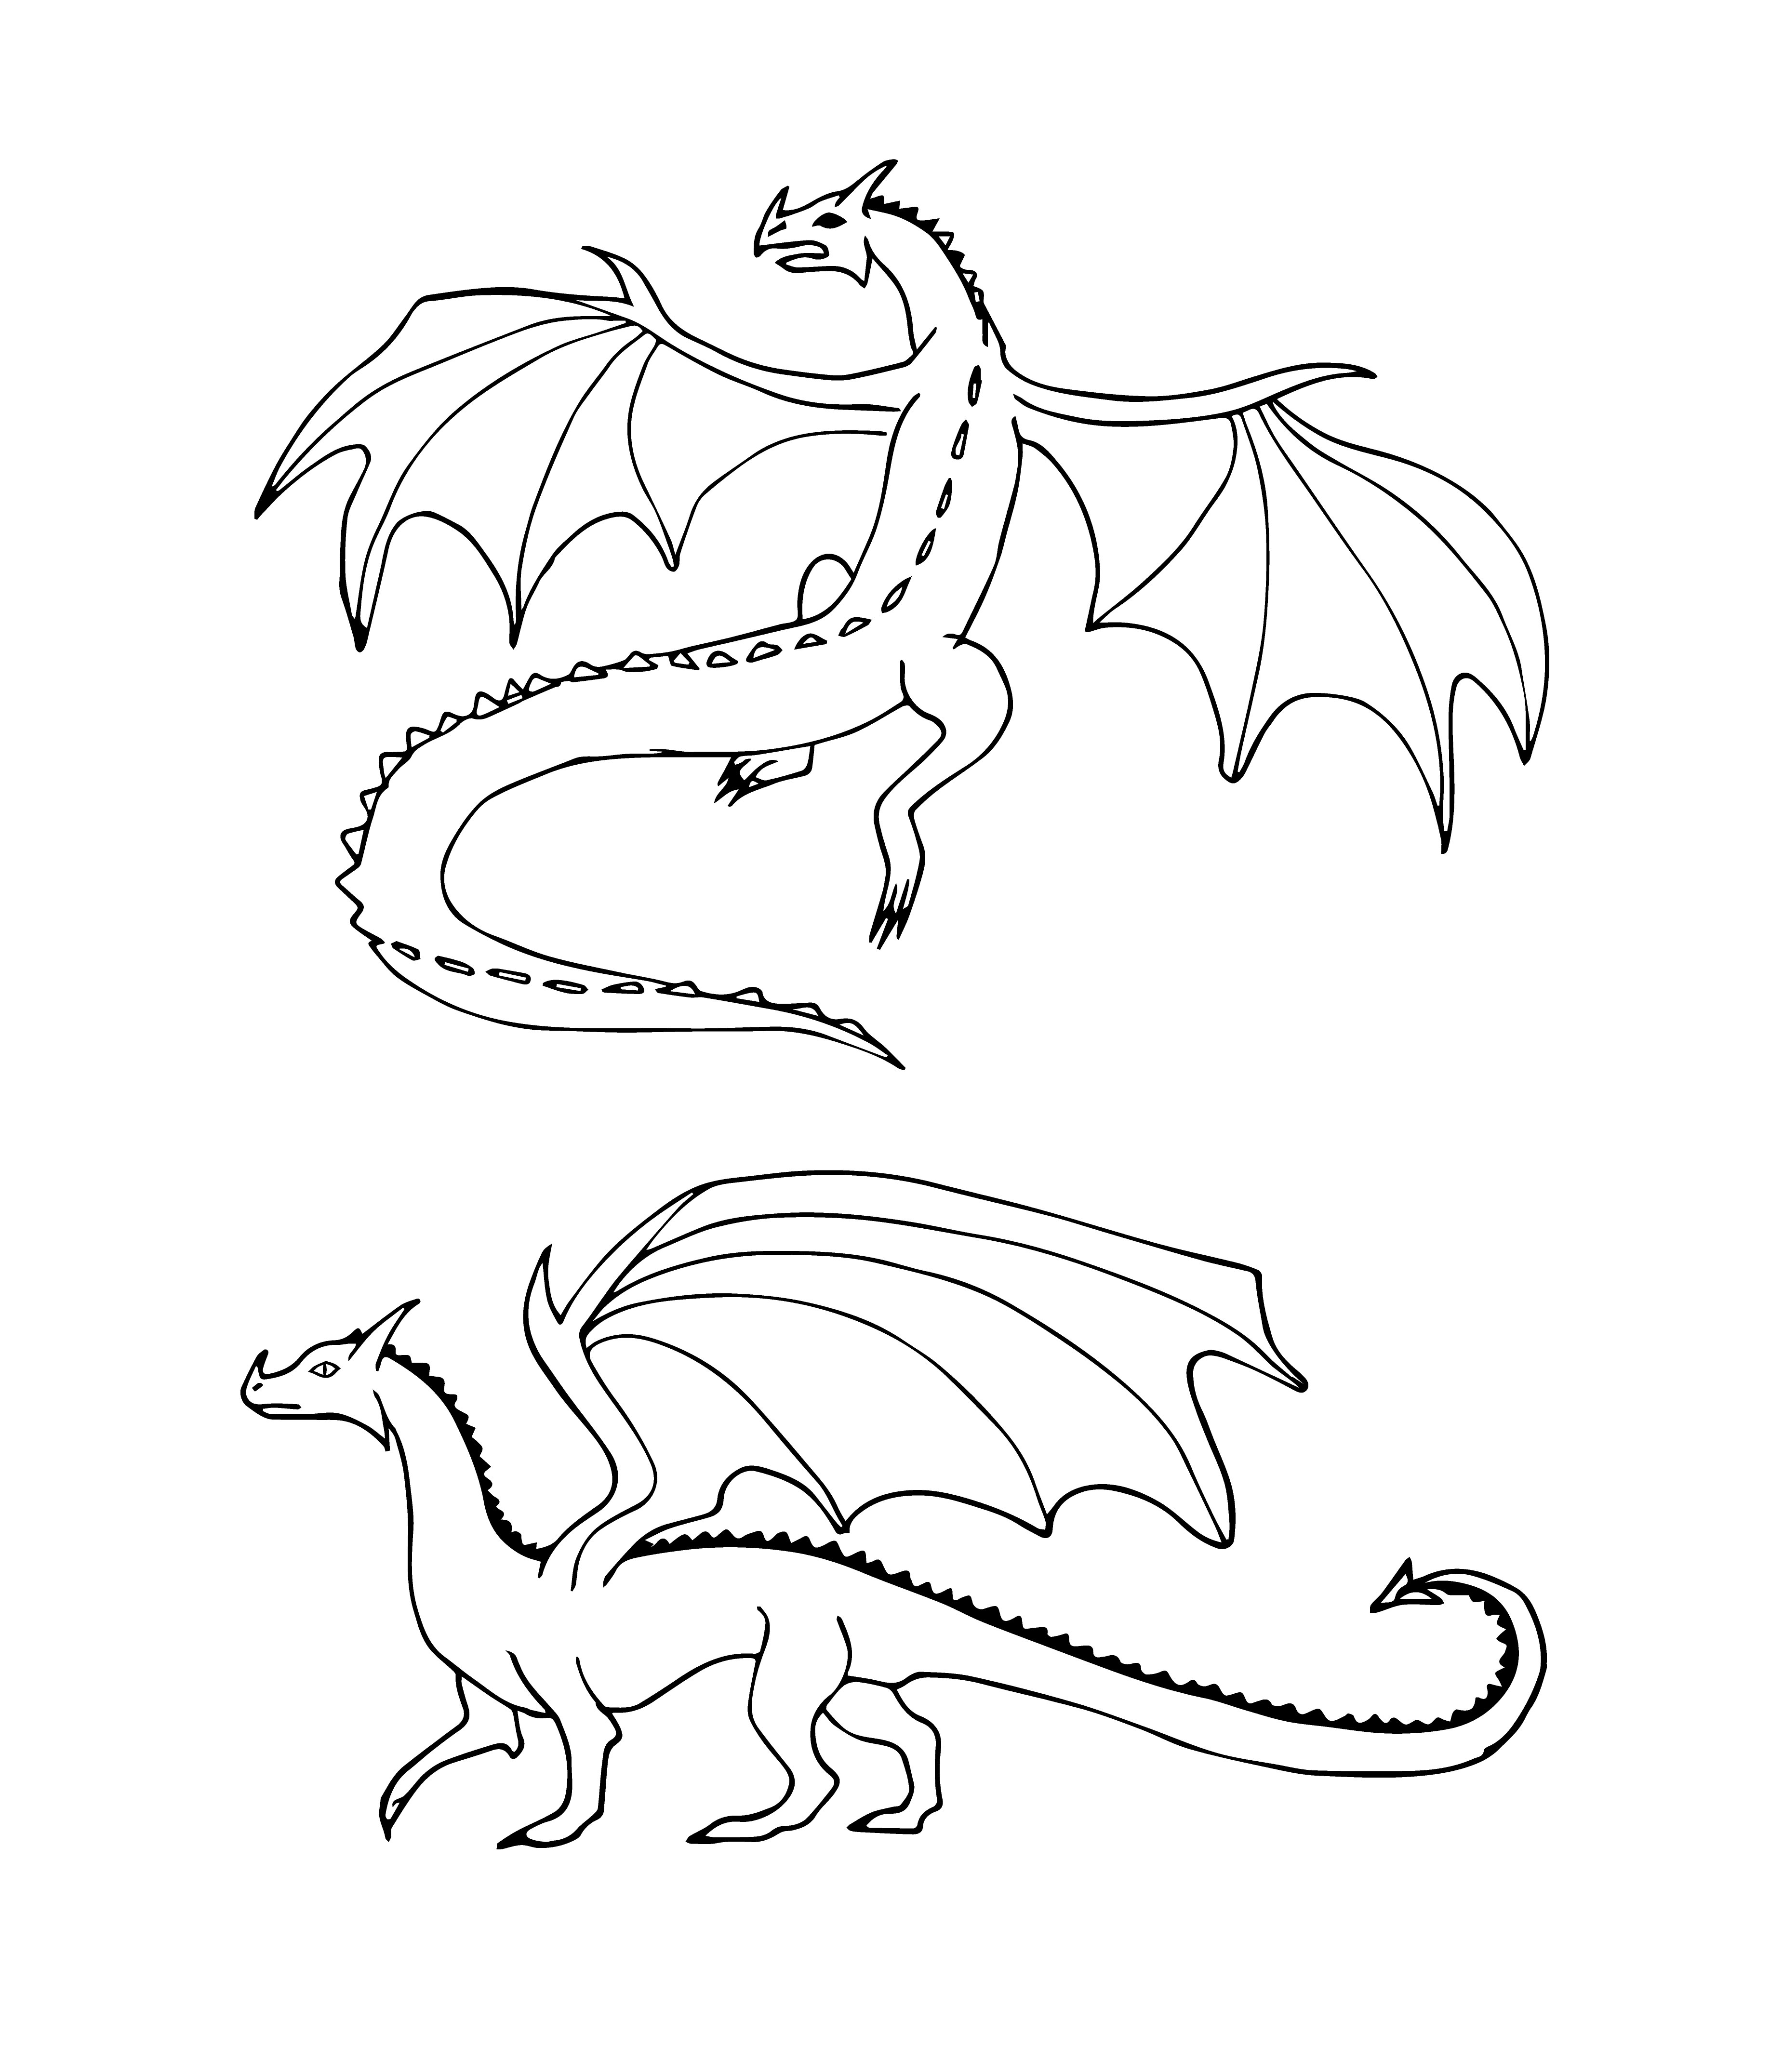 Раскраска летающий дракон формата А4 в высоком качестве